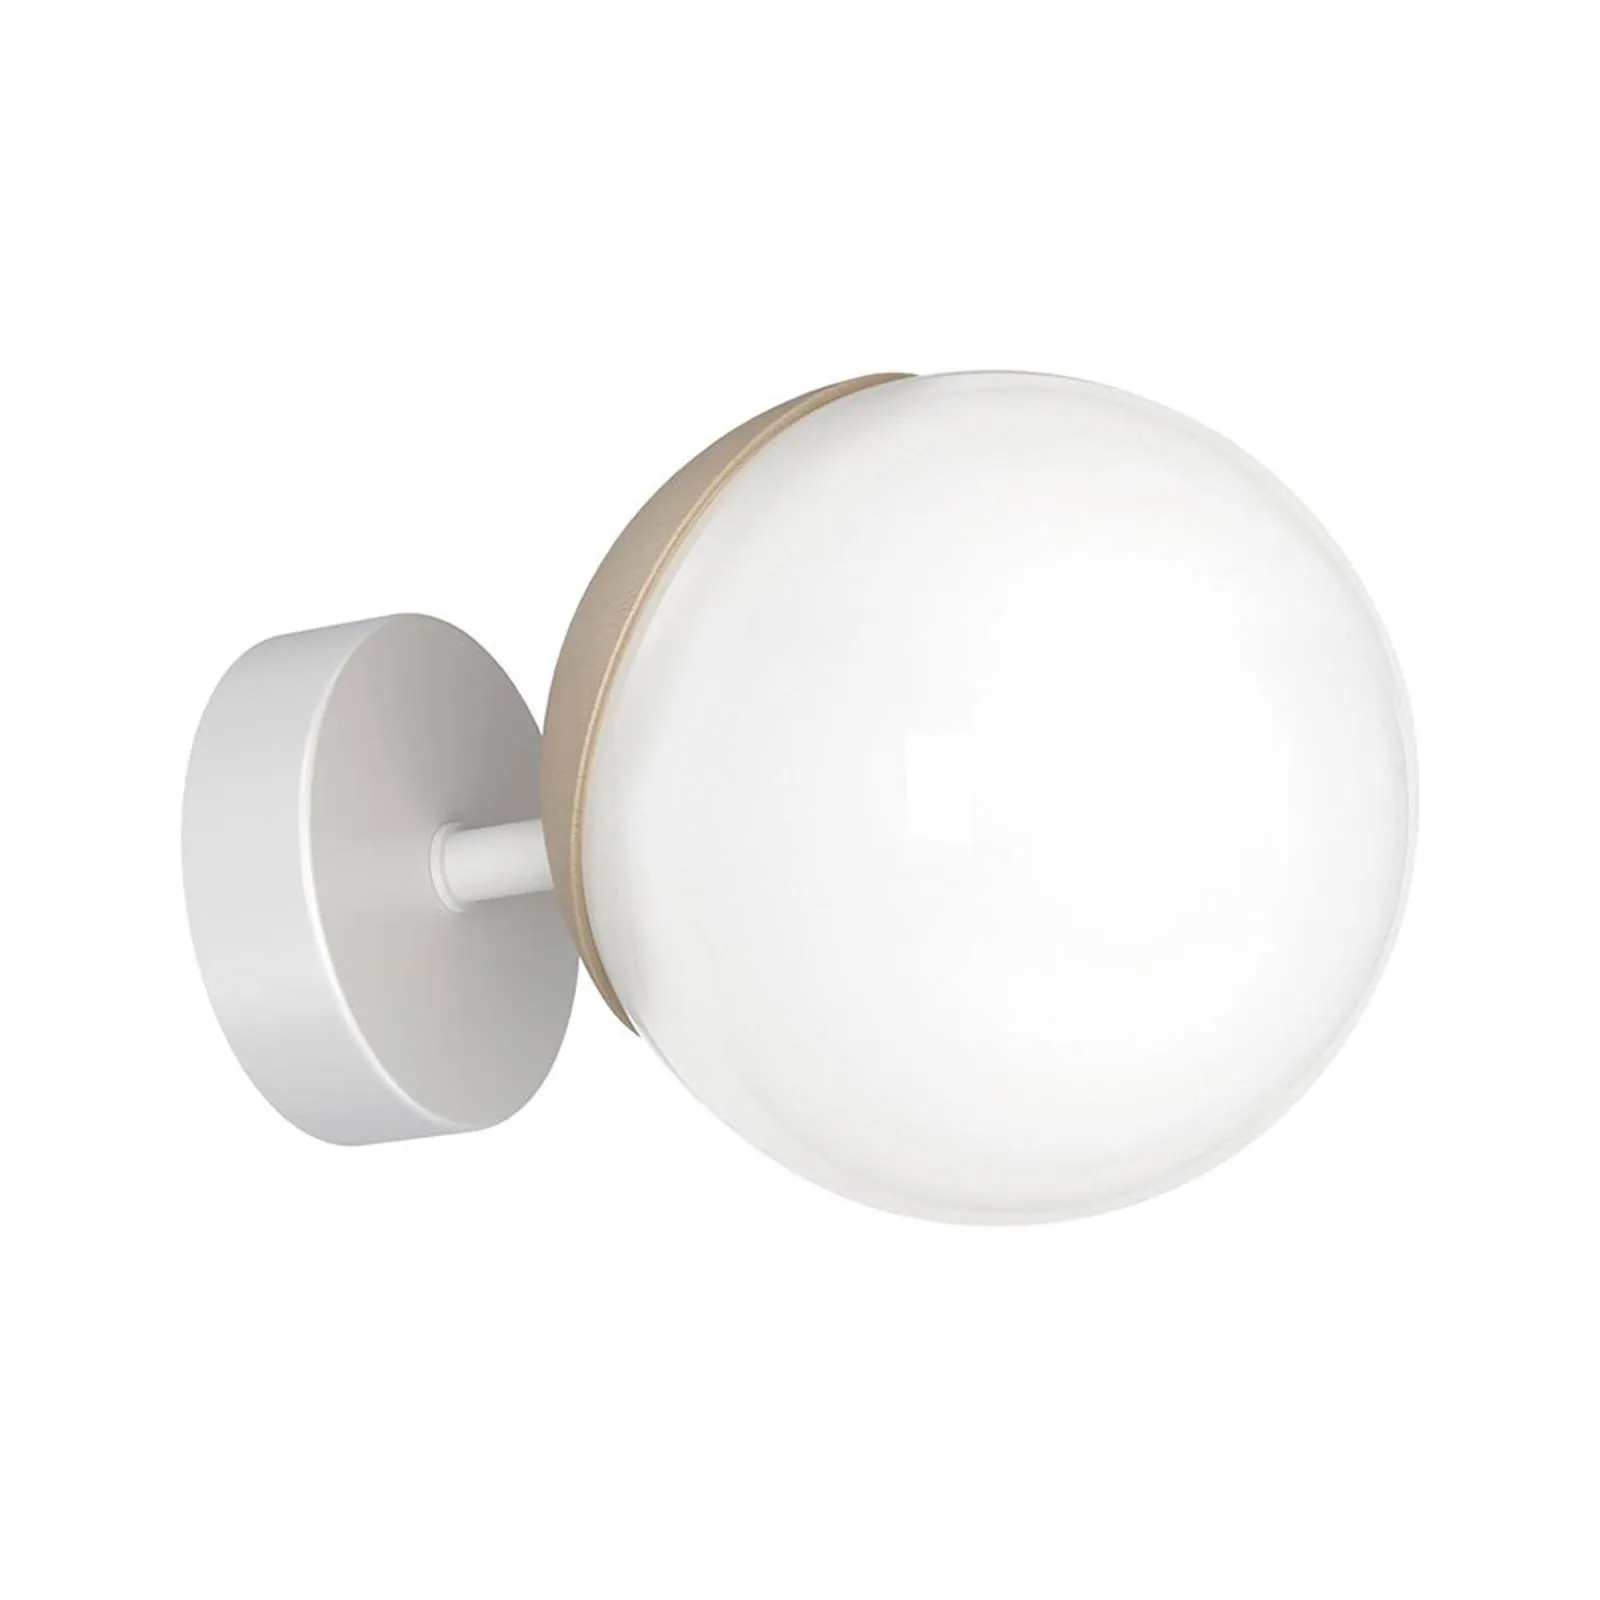 Sfera wall light 1-bulb glass/white/wood